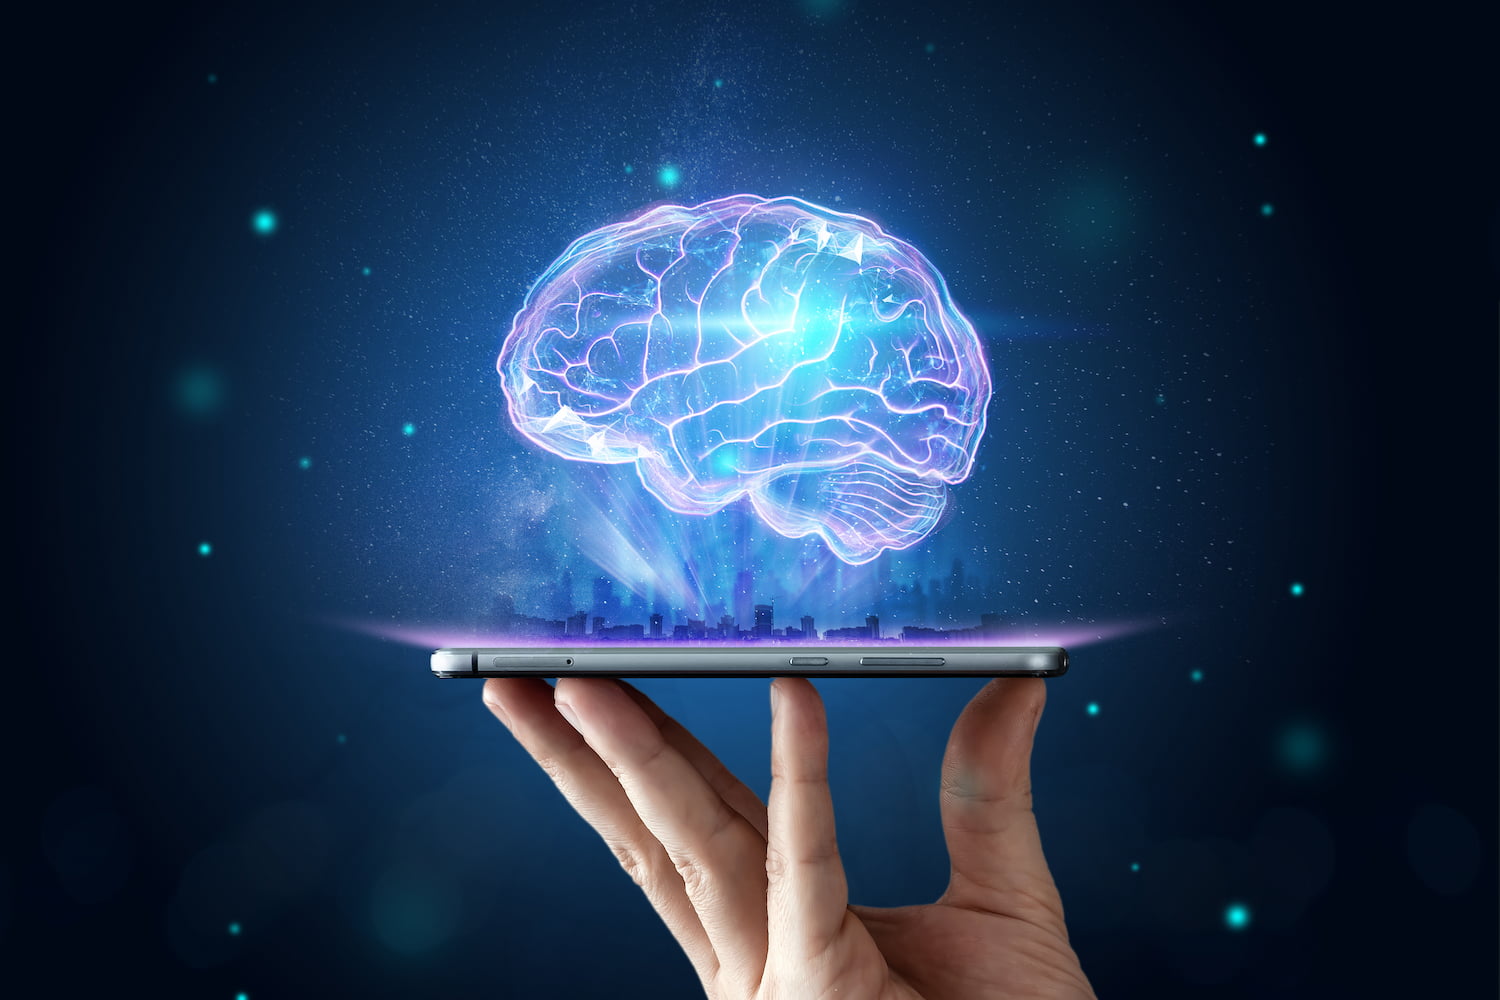 ilustração de um celular com um cérebro, representando a inteligência do processamento de linguagem natural